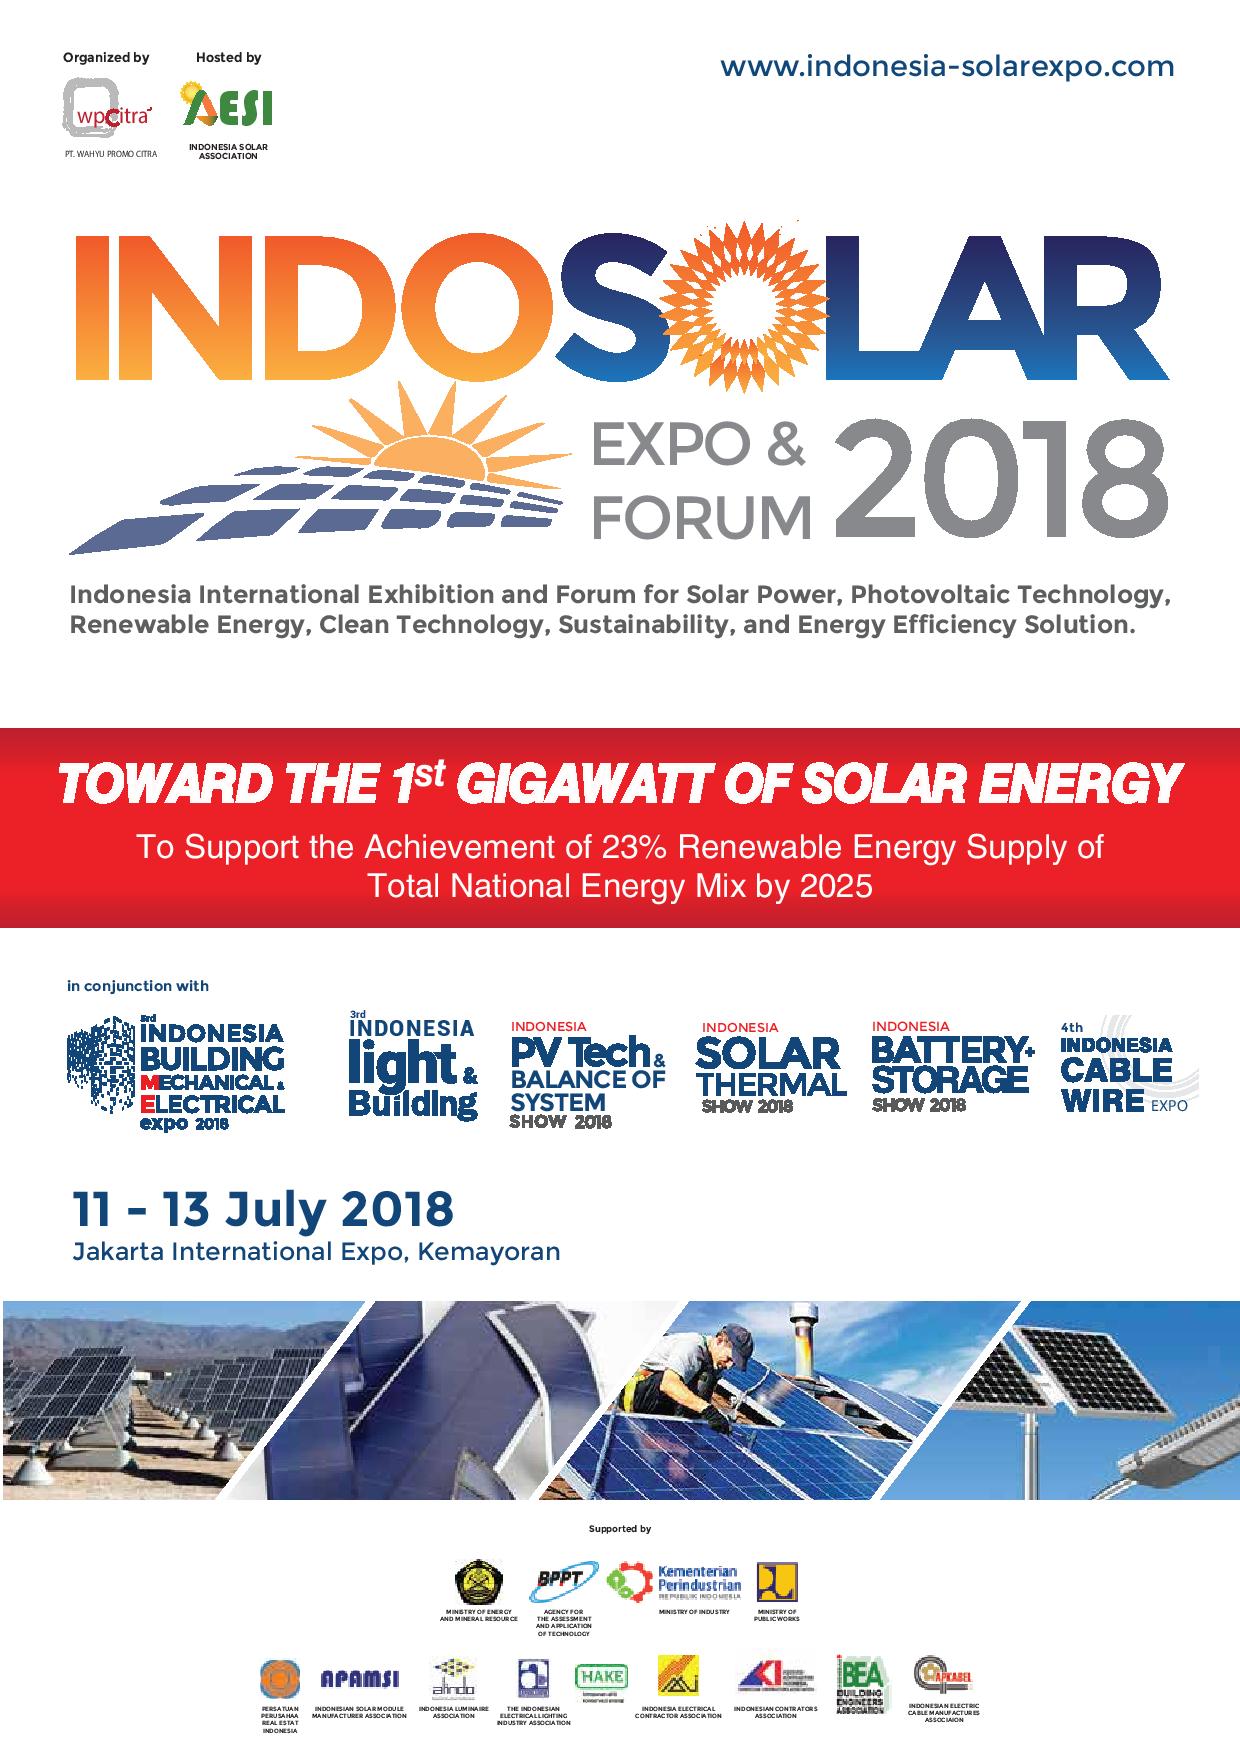 INDO SOLAR EXPO 2018